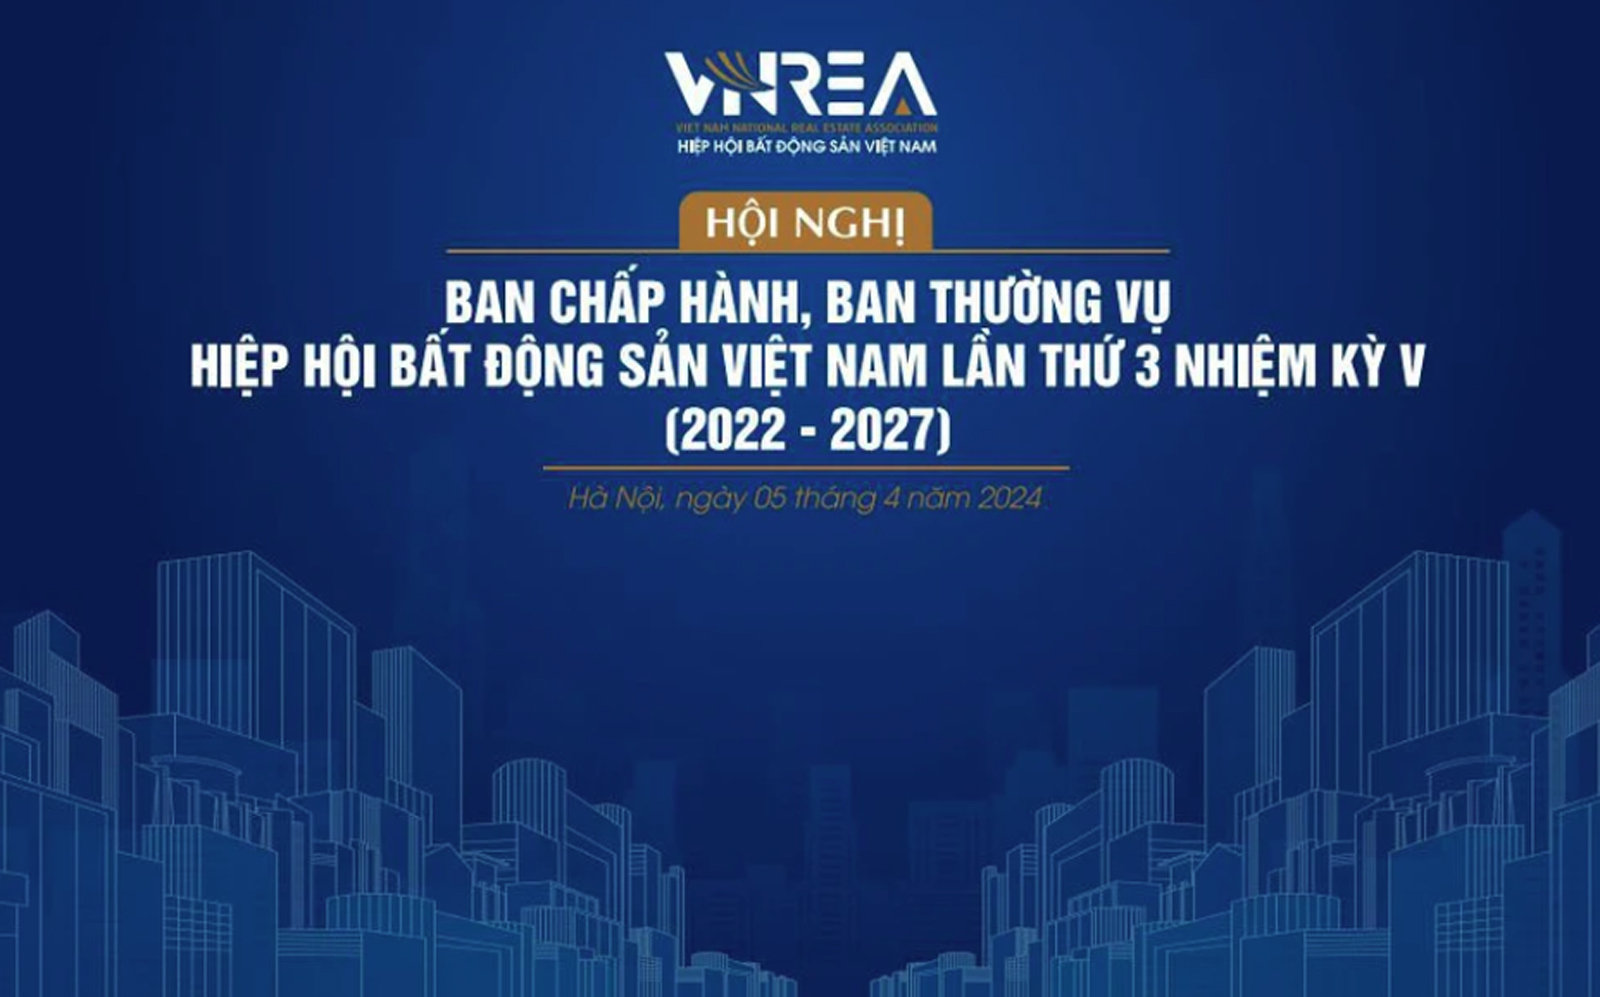  Hiệp hội Bất động sản Việt Nam tổ chức Hội nghị Ban Chấp hành, Ban Thường vụ và gặp mặt Hội viên thường niên năm 2024 